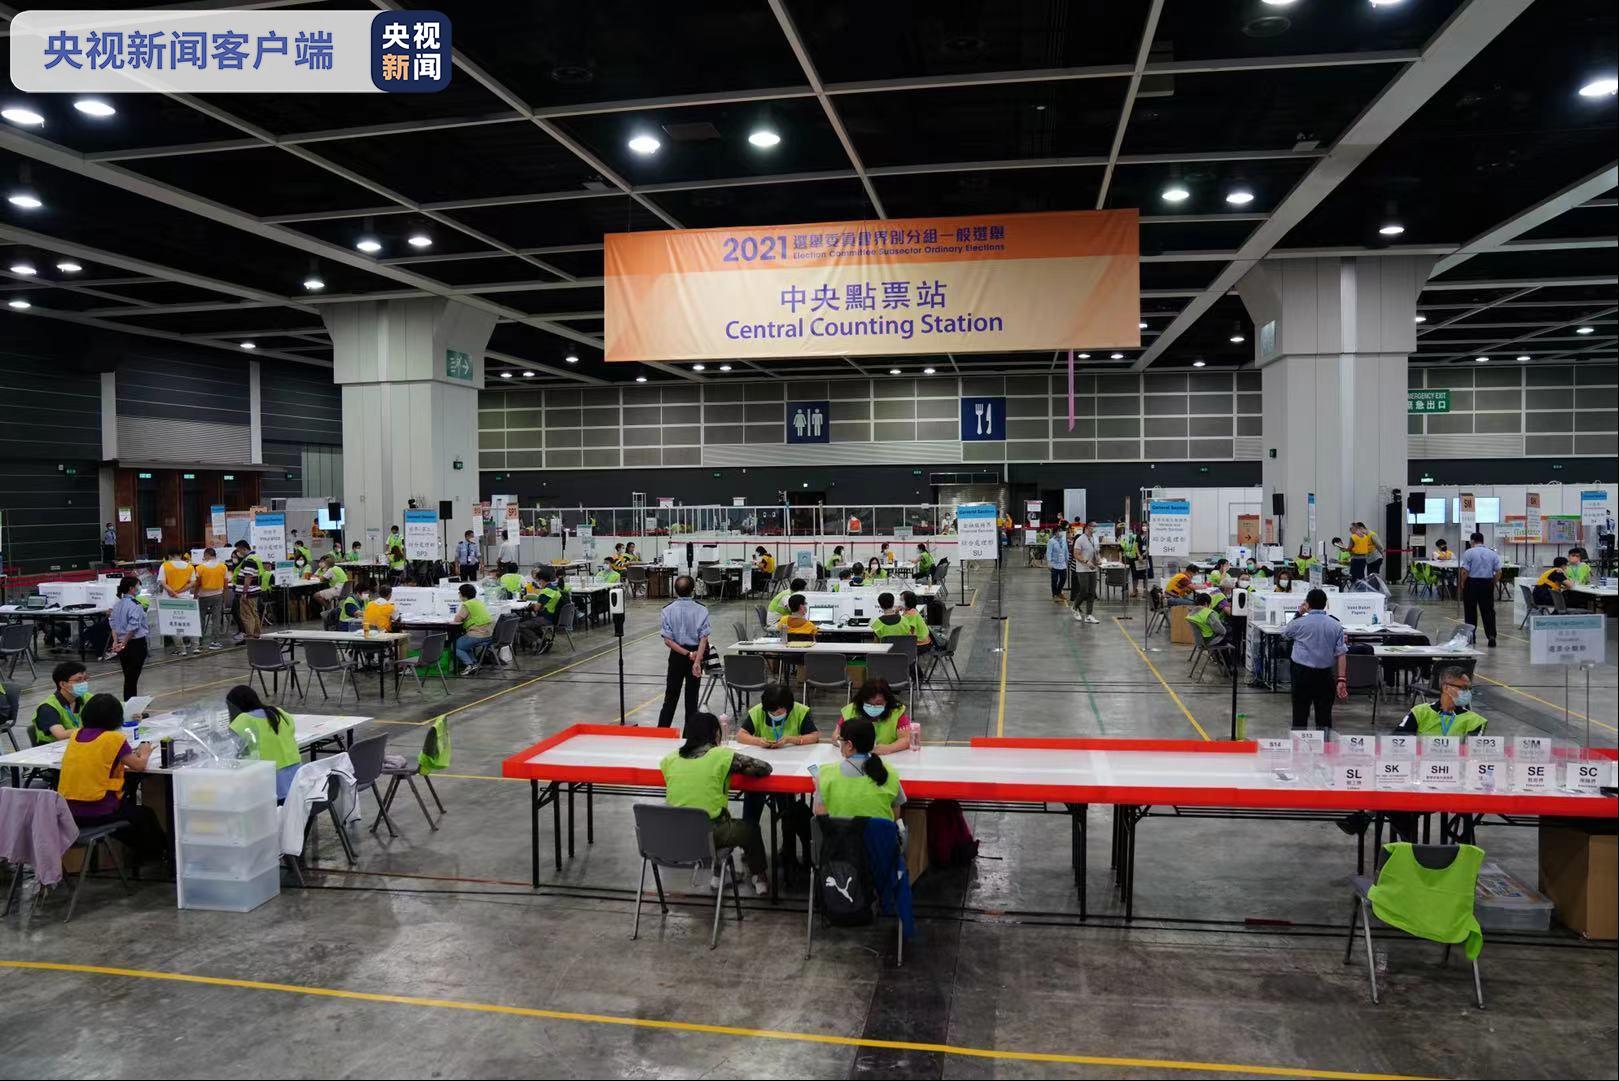 2021年香港特区选委会界别分组一般选举投票结束 进入点票程序